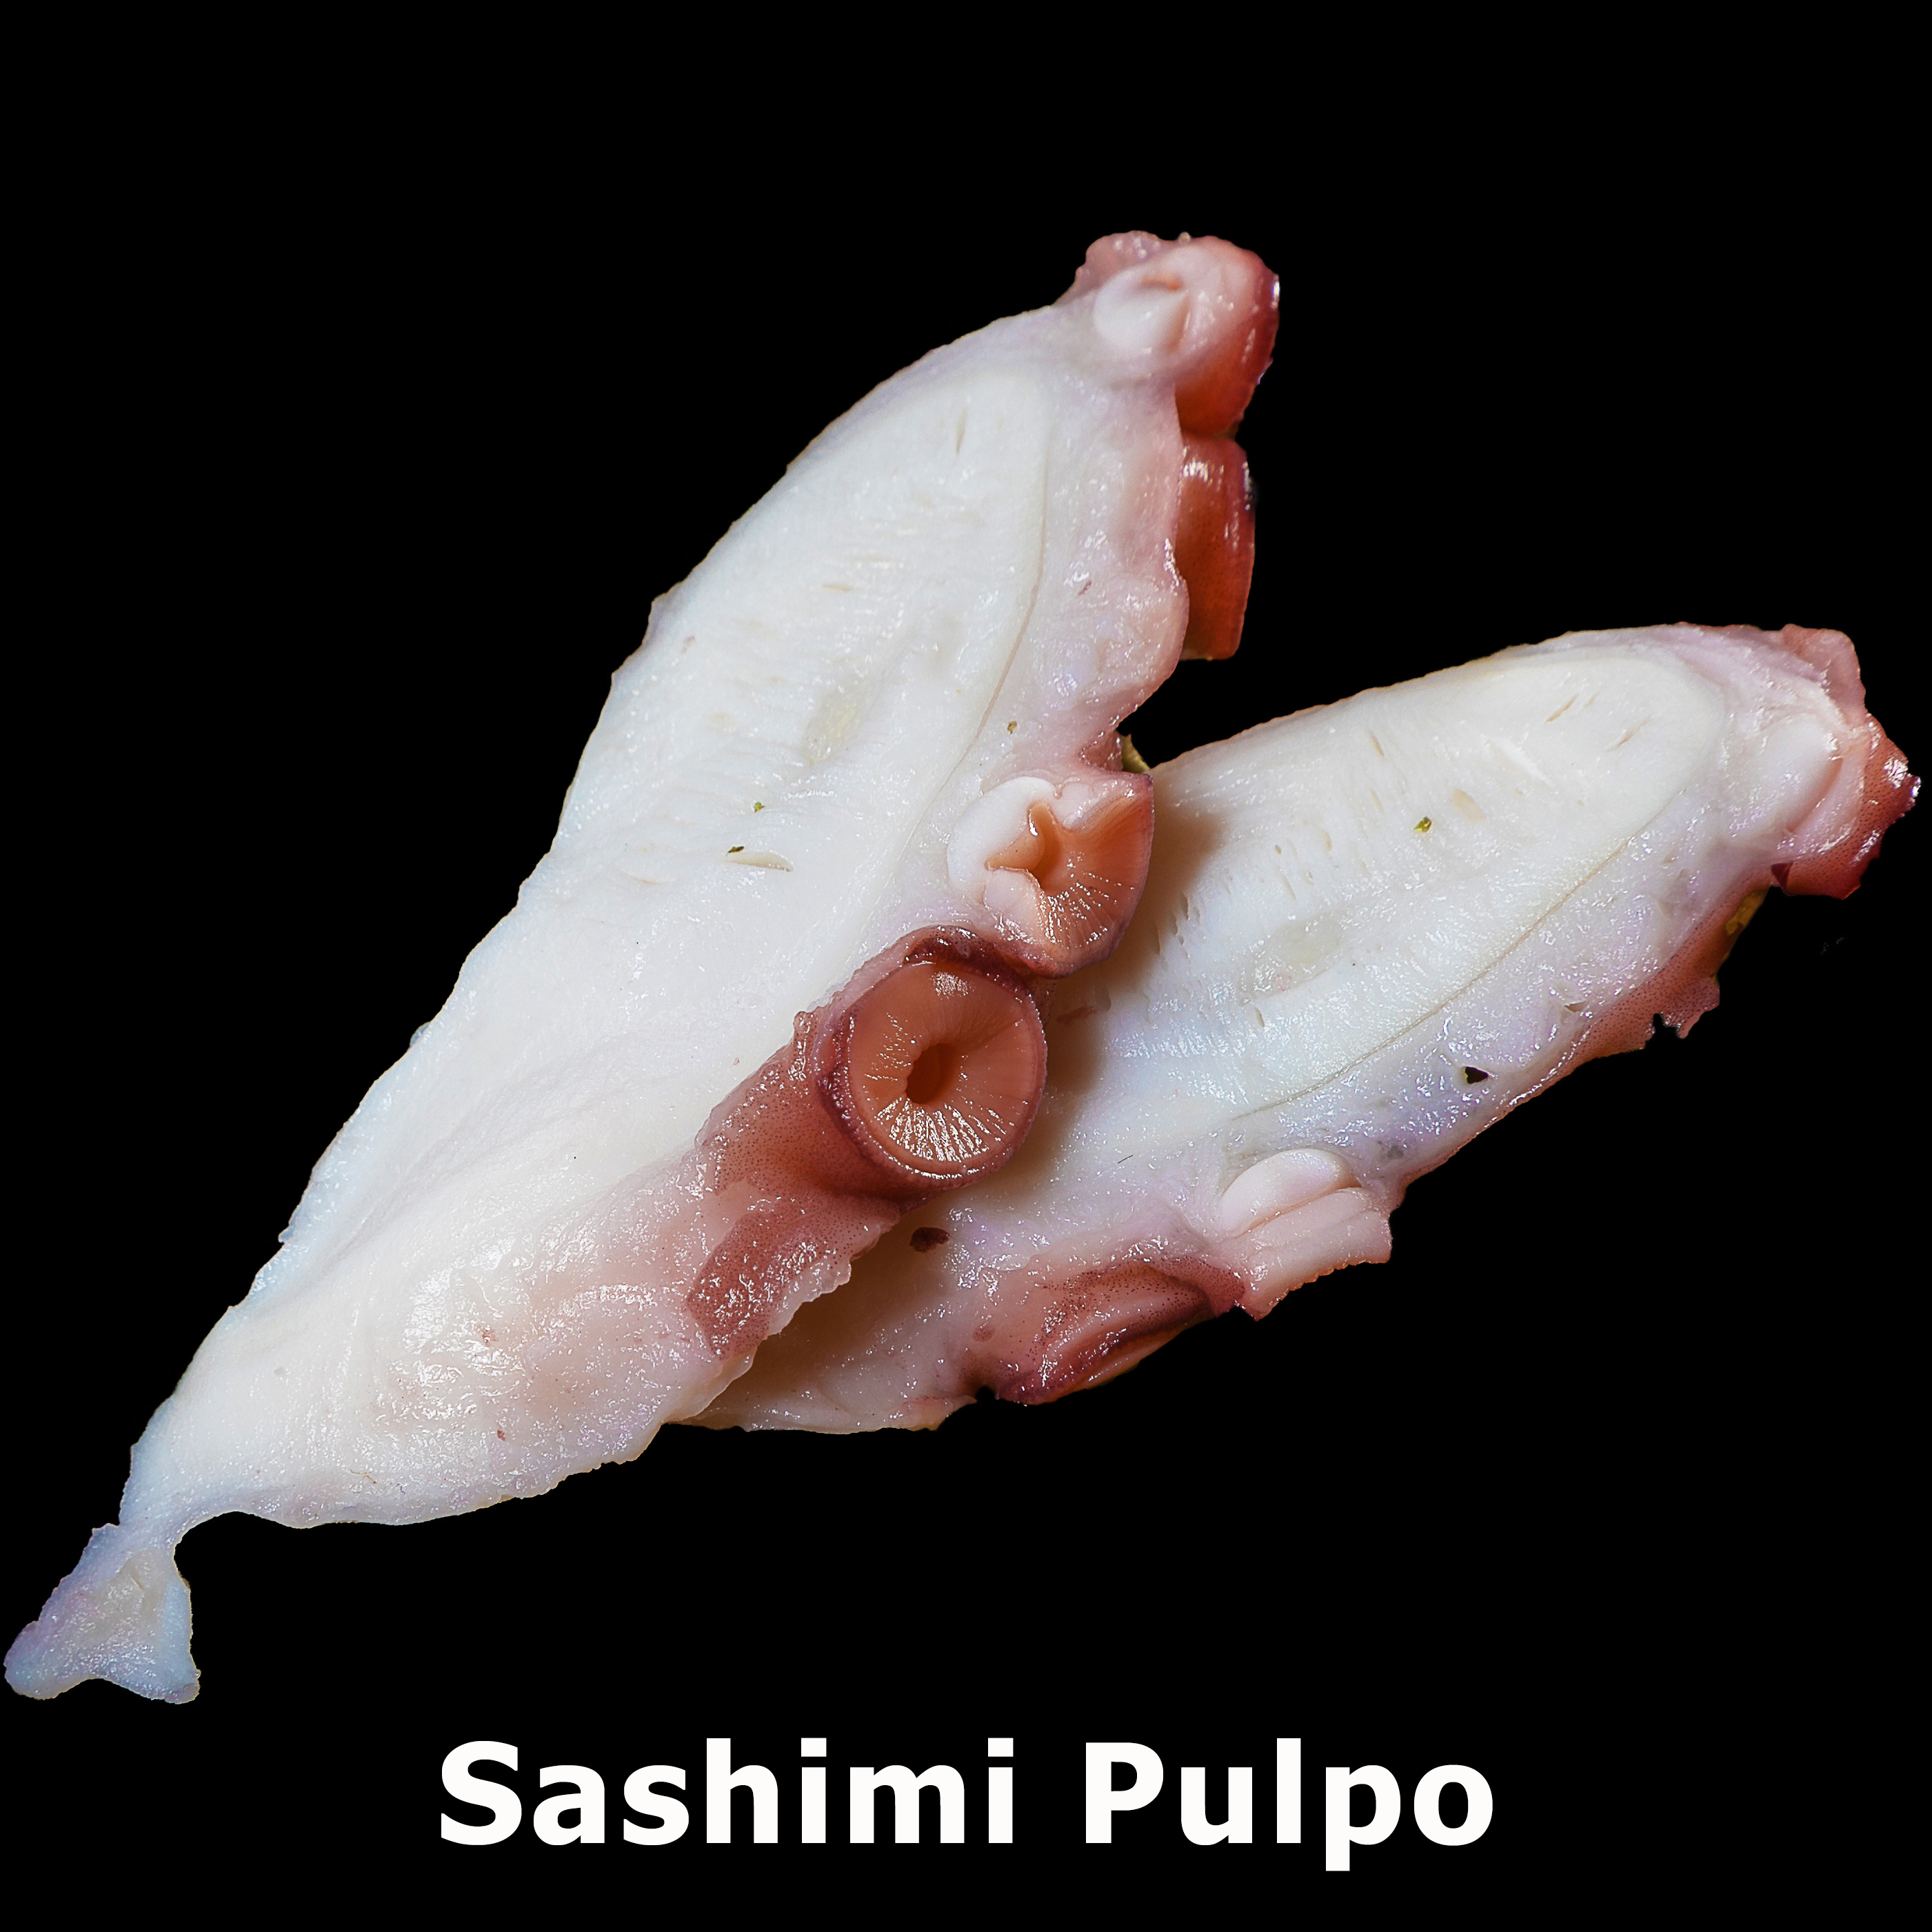 74. Sashimi Pulpo